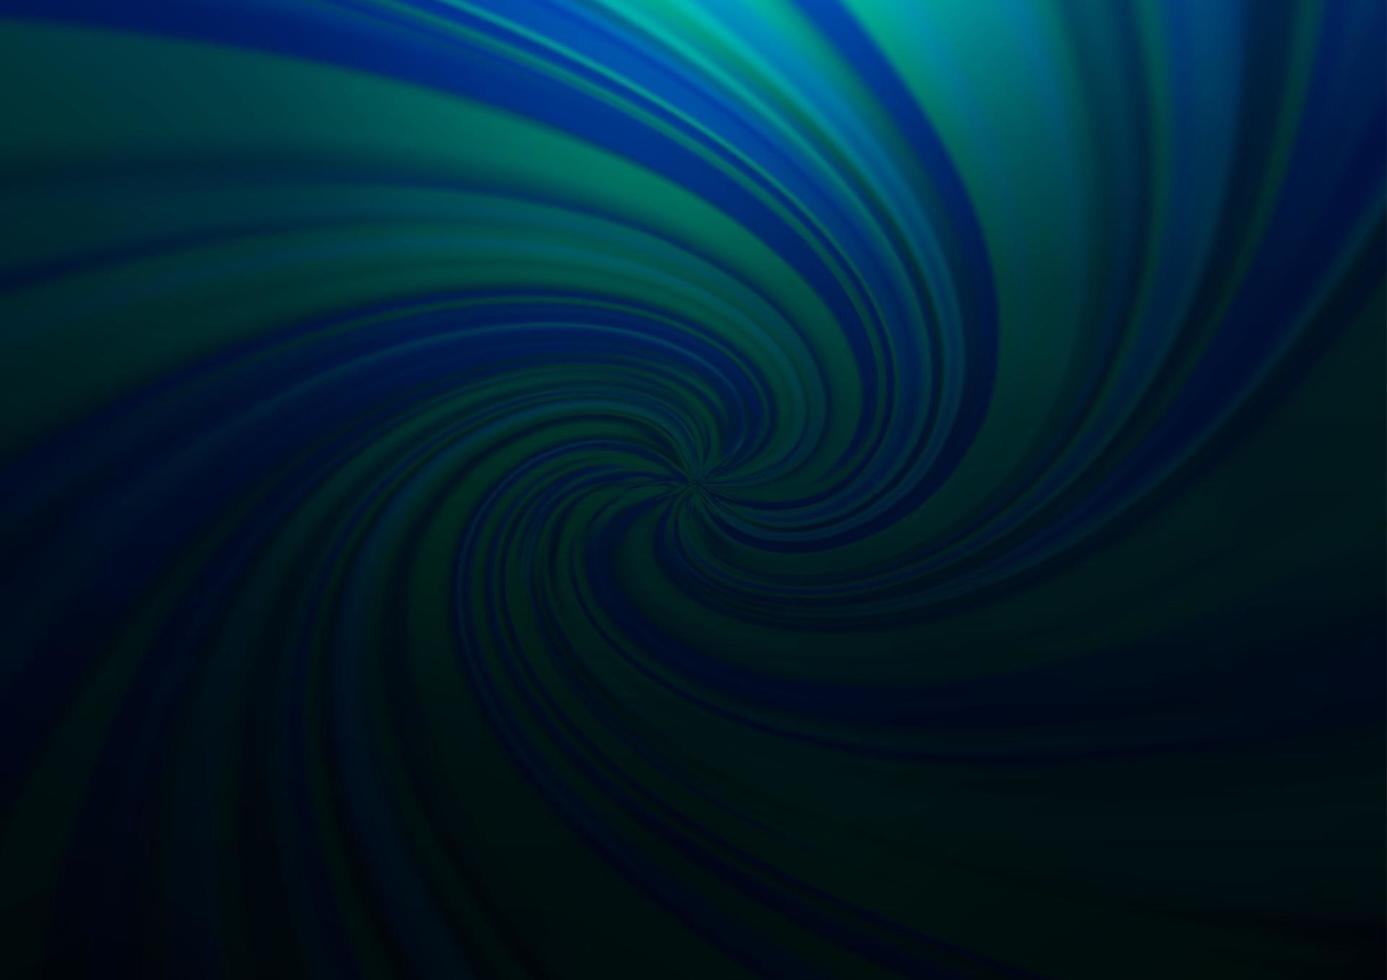 Dark BLUE vector blur pattern.